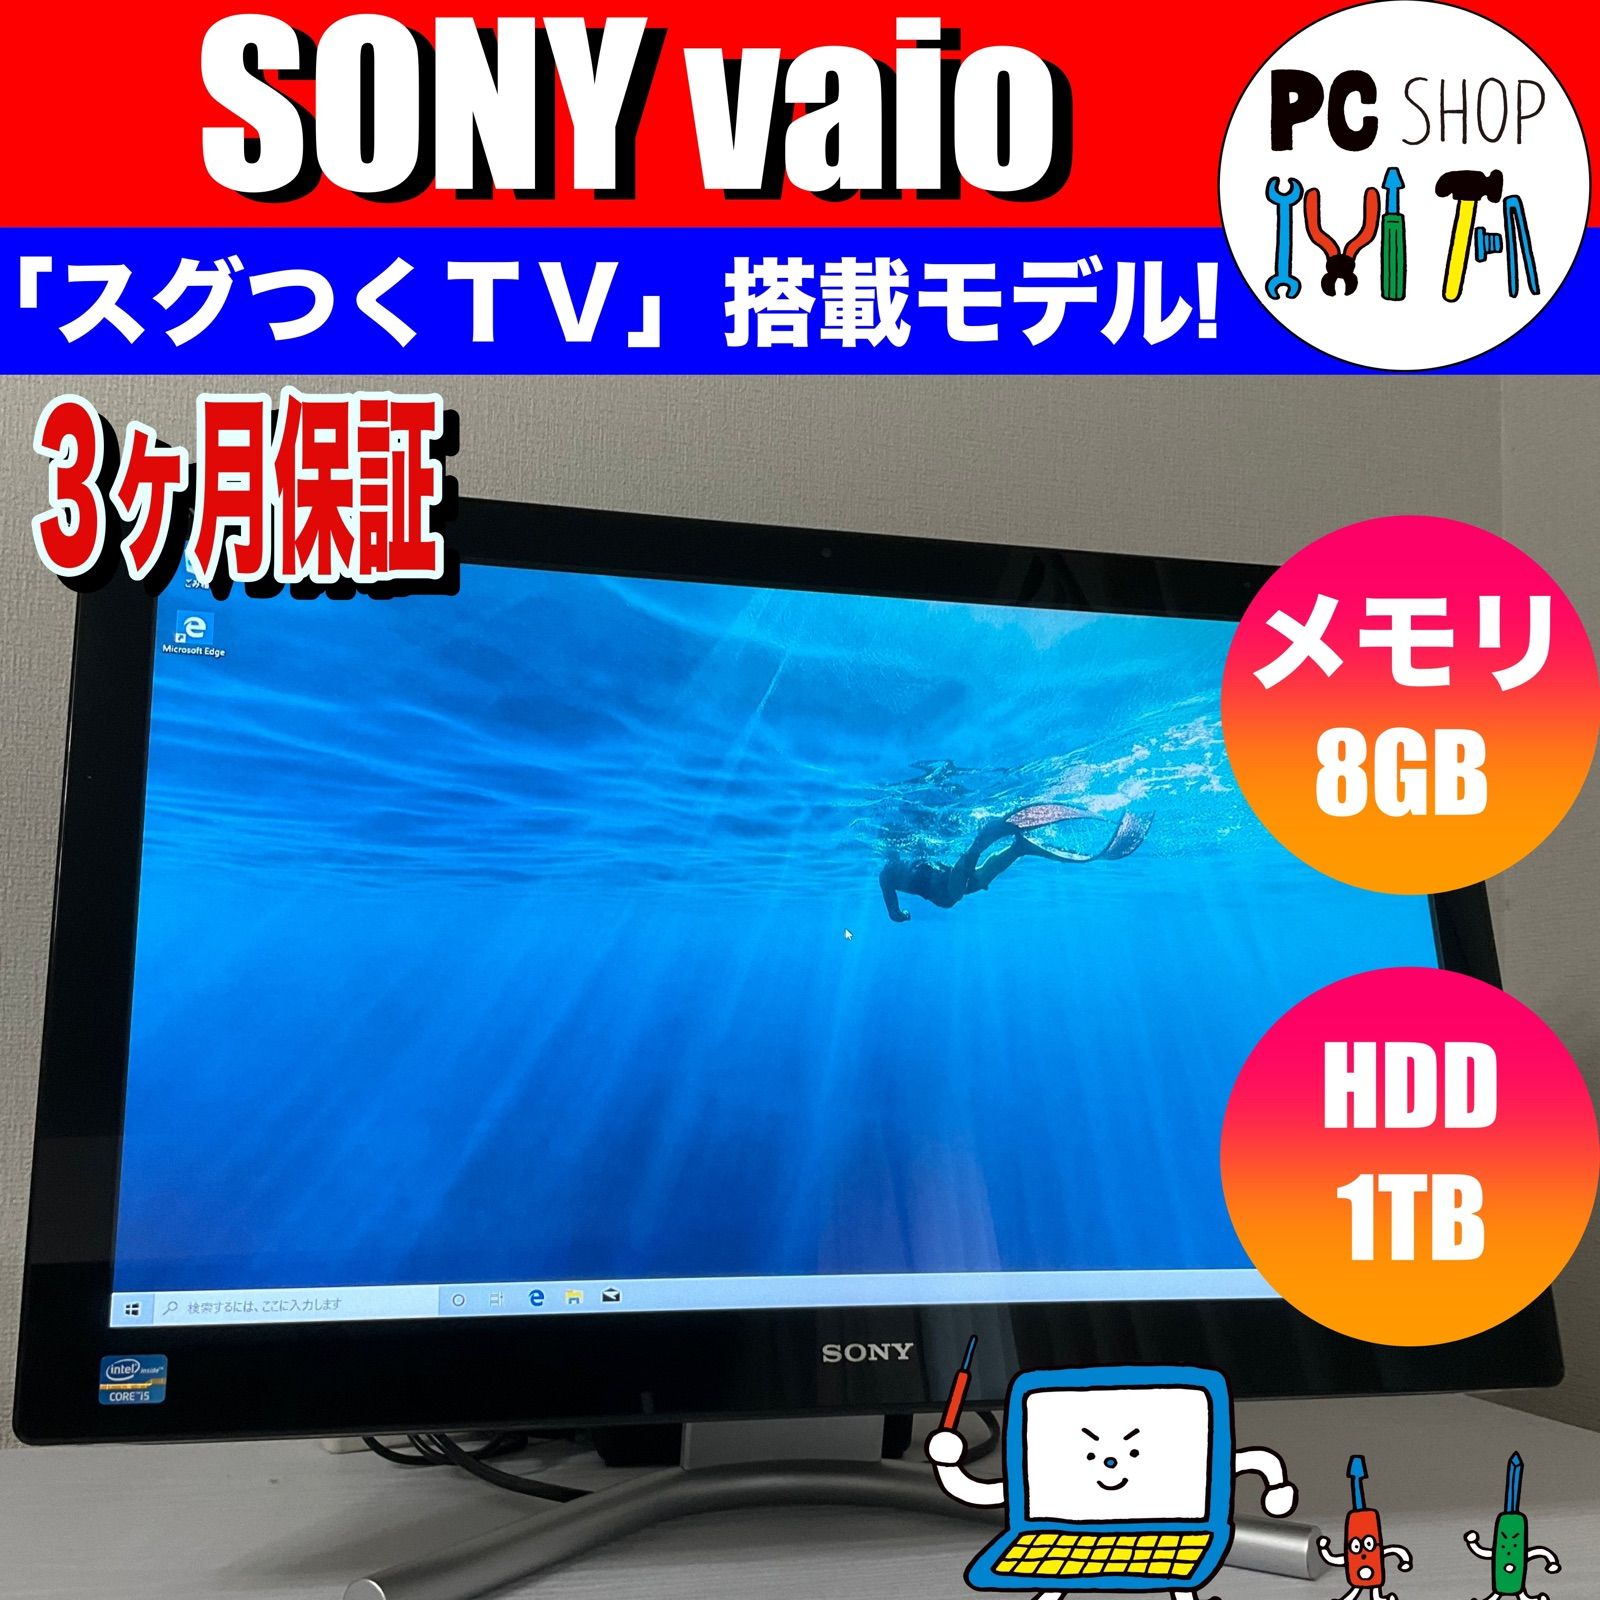 SONY VAIO 24インチ一体型ブルーレイ TV機能 VPCL217FJ - デスクトップ型PC